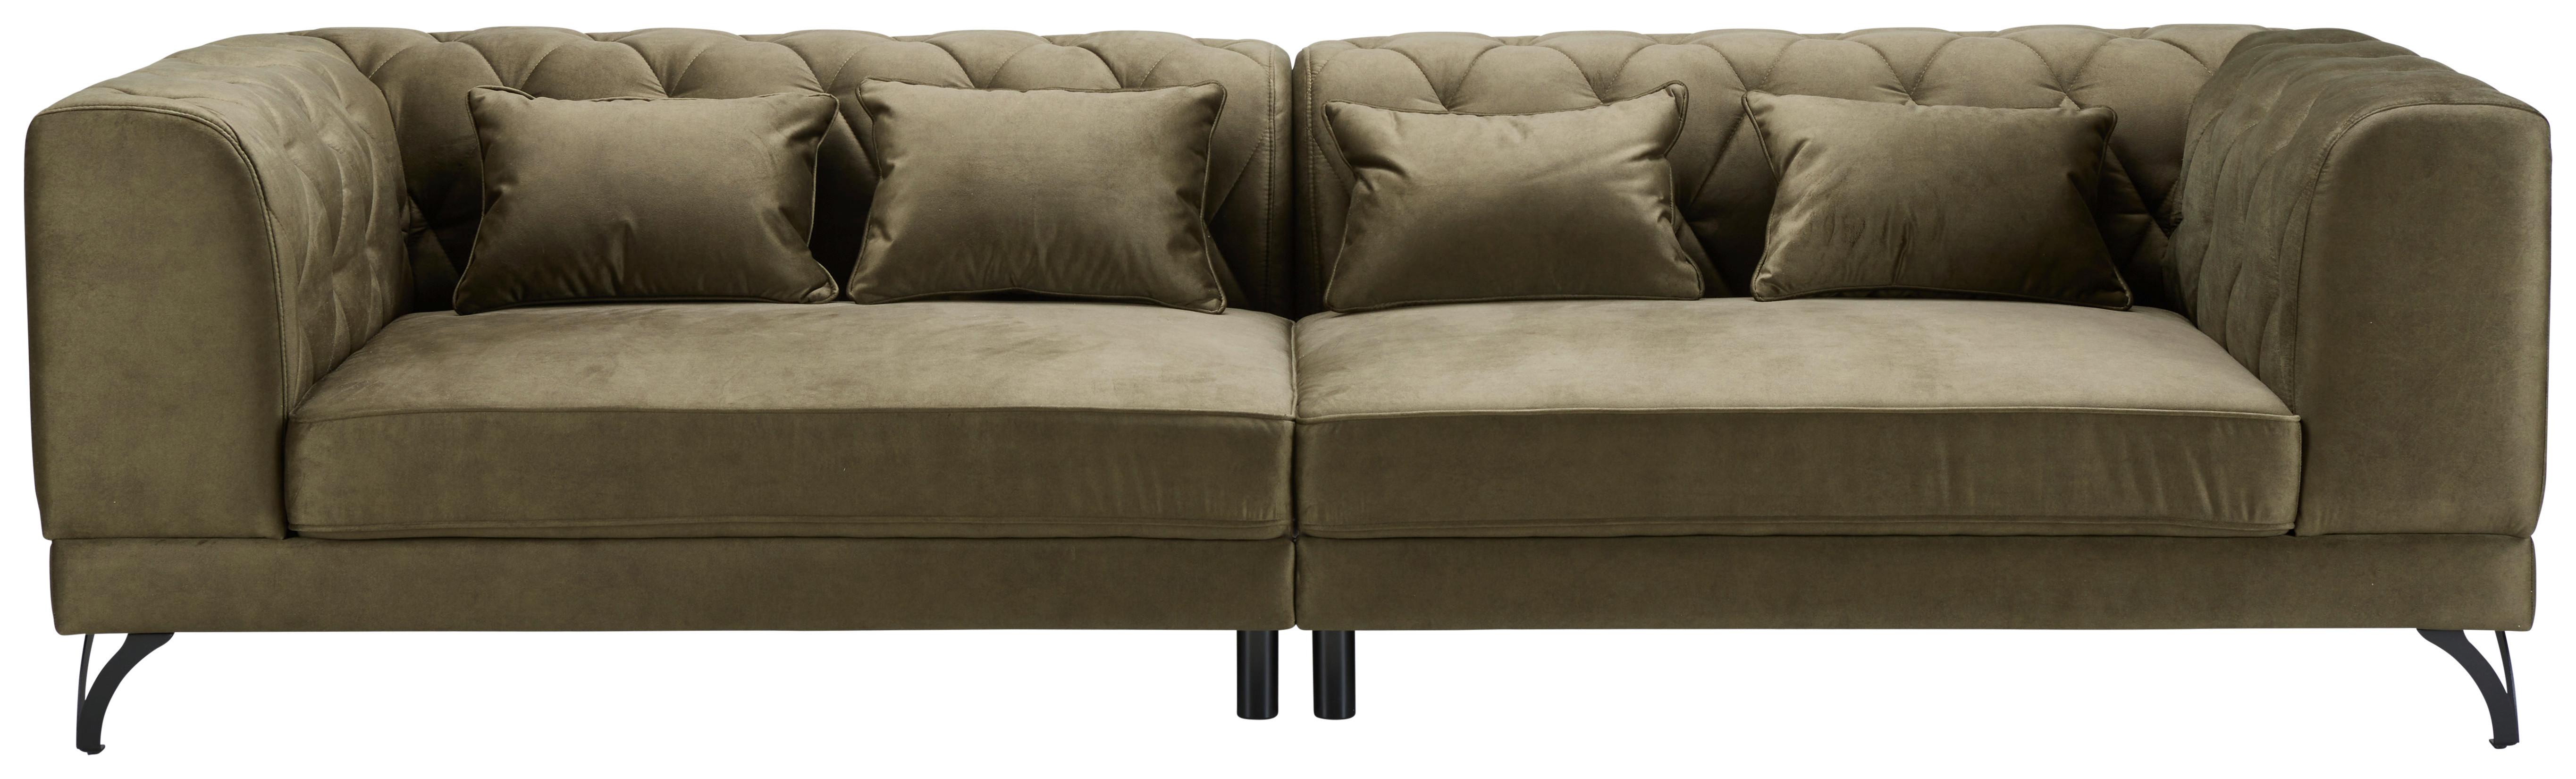 Sofa Totti - maslinasto zelena/crna, Modern, tekstil/metal (277/74/100cm) - Premium Living